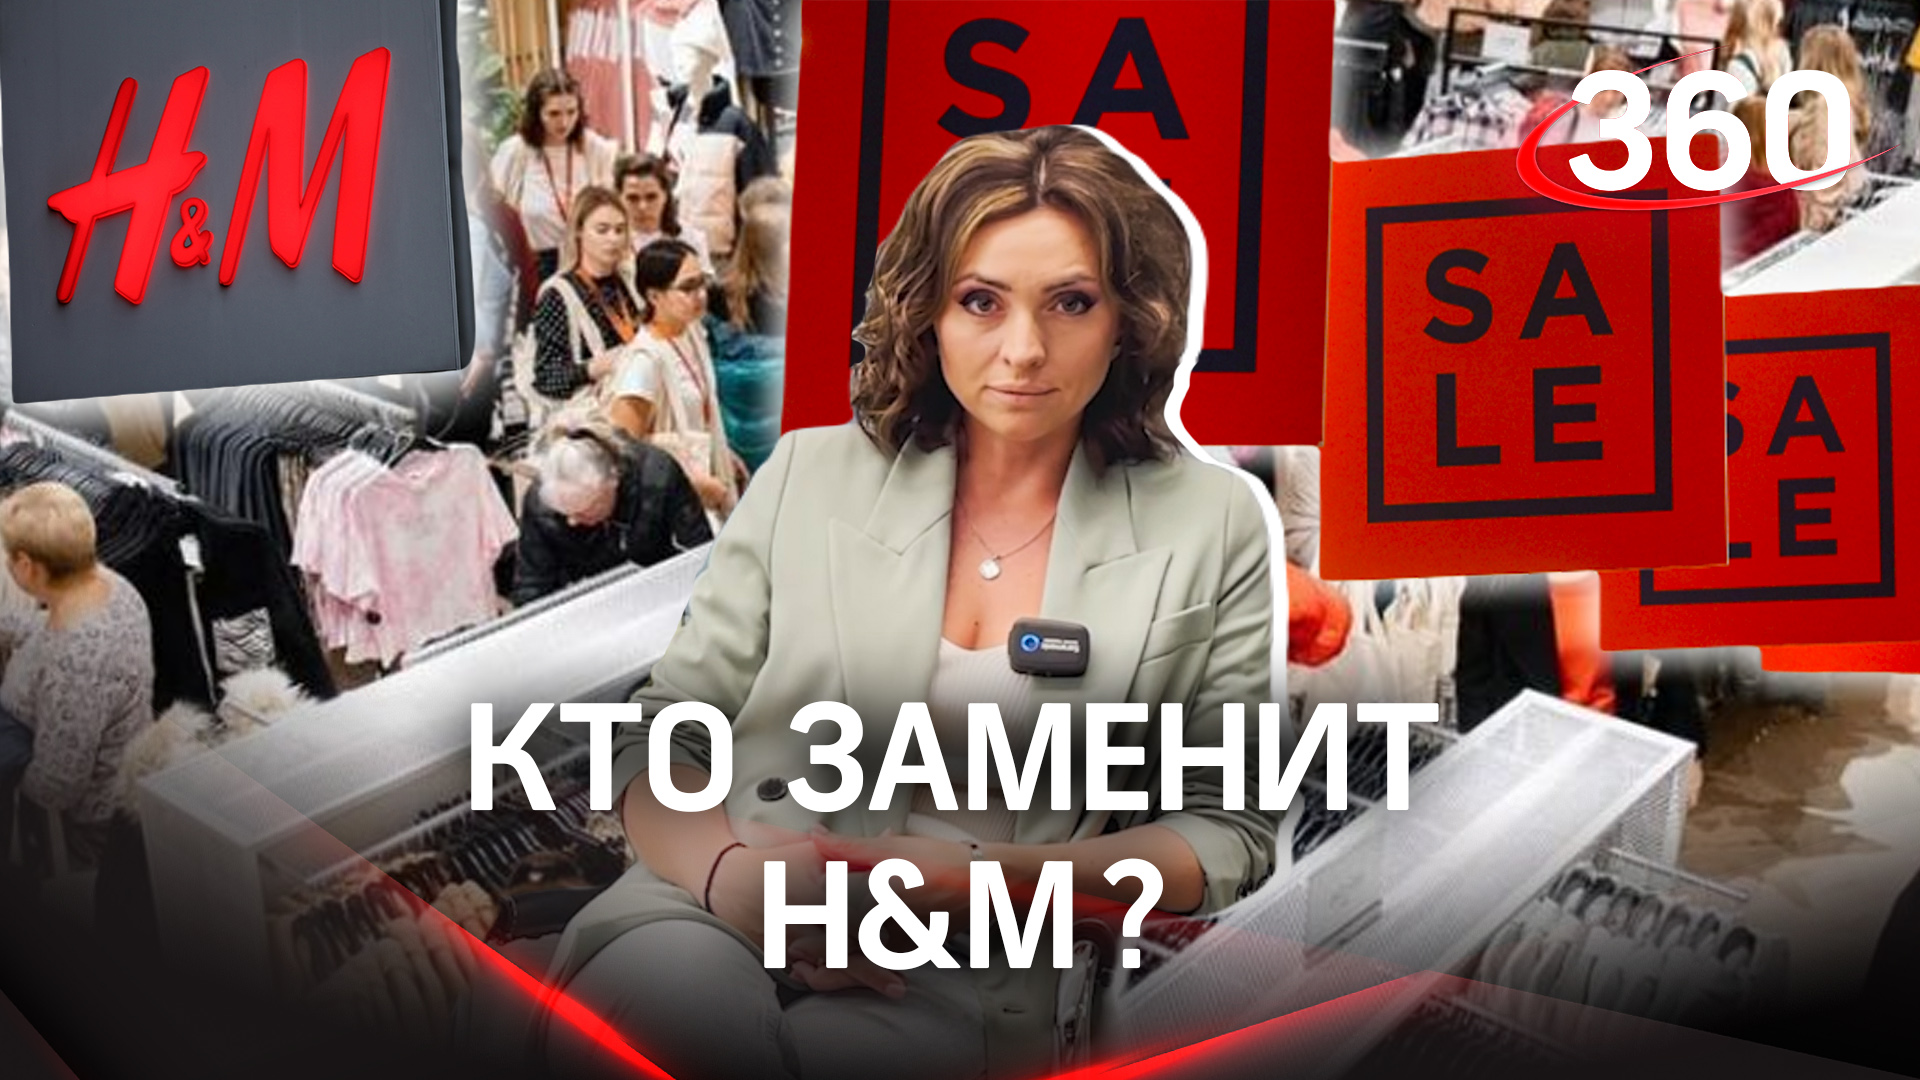 Кто заменит H&M и когда распродажа?